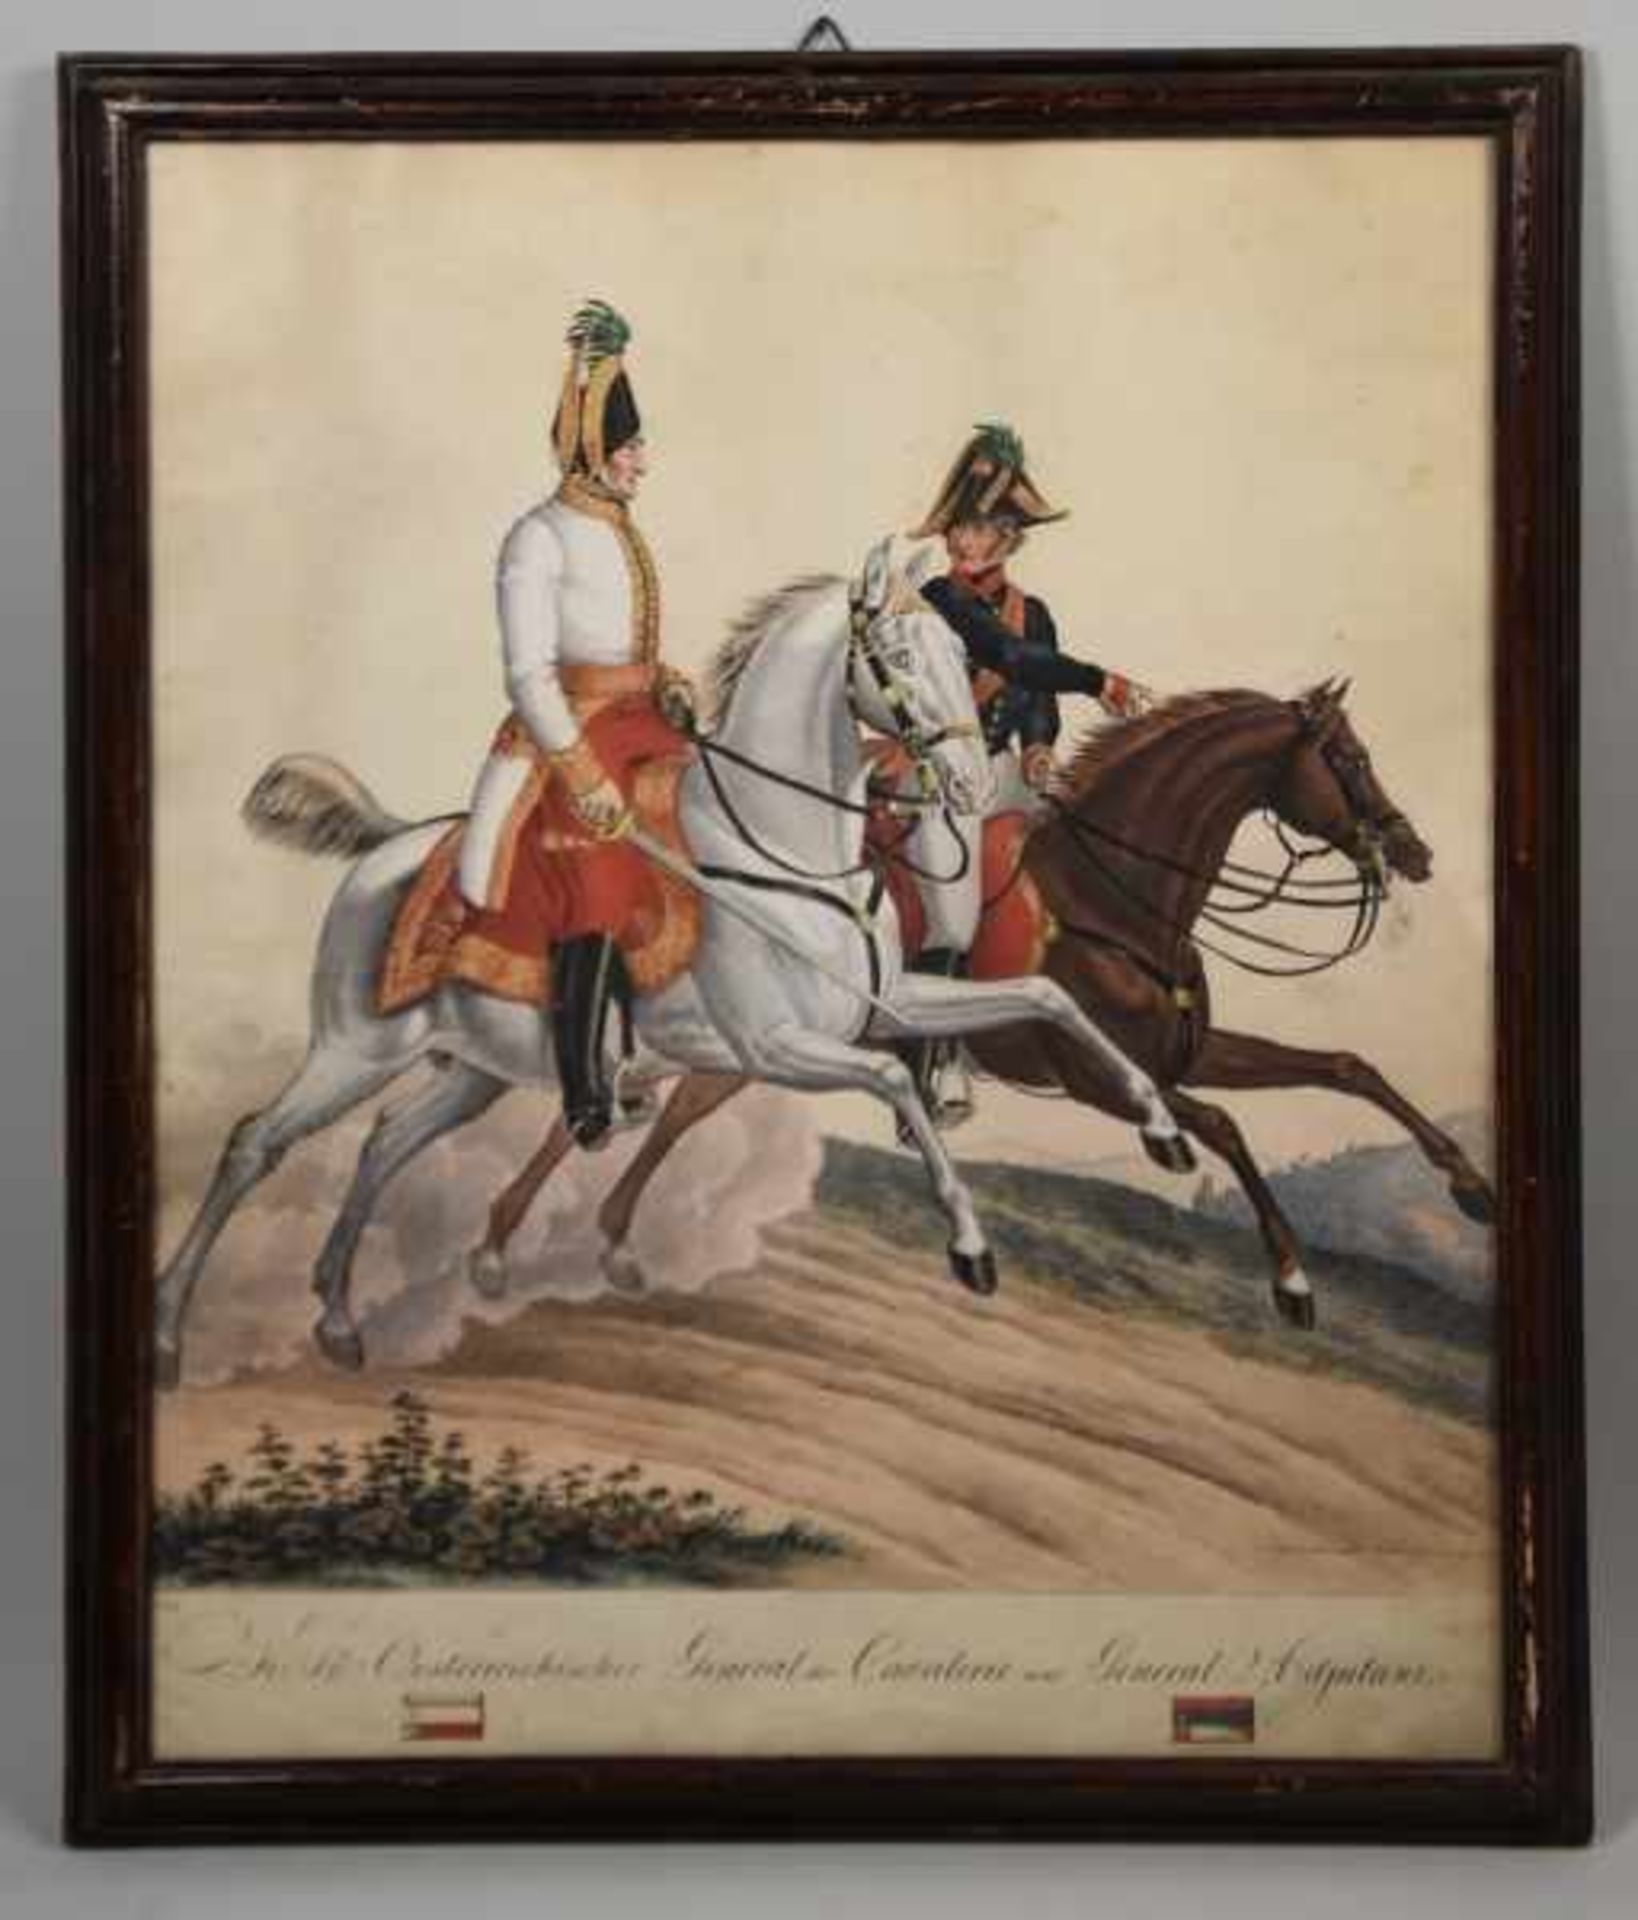 MILITÄR "K.K. Österreichischer Adel der Cavalerie und General Adjutant", Darstellung eines - Image 2 of 4